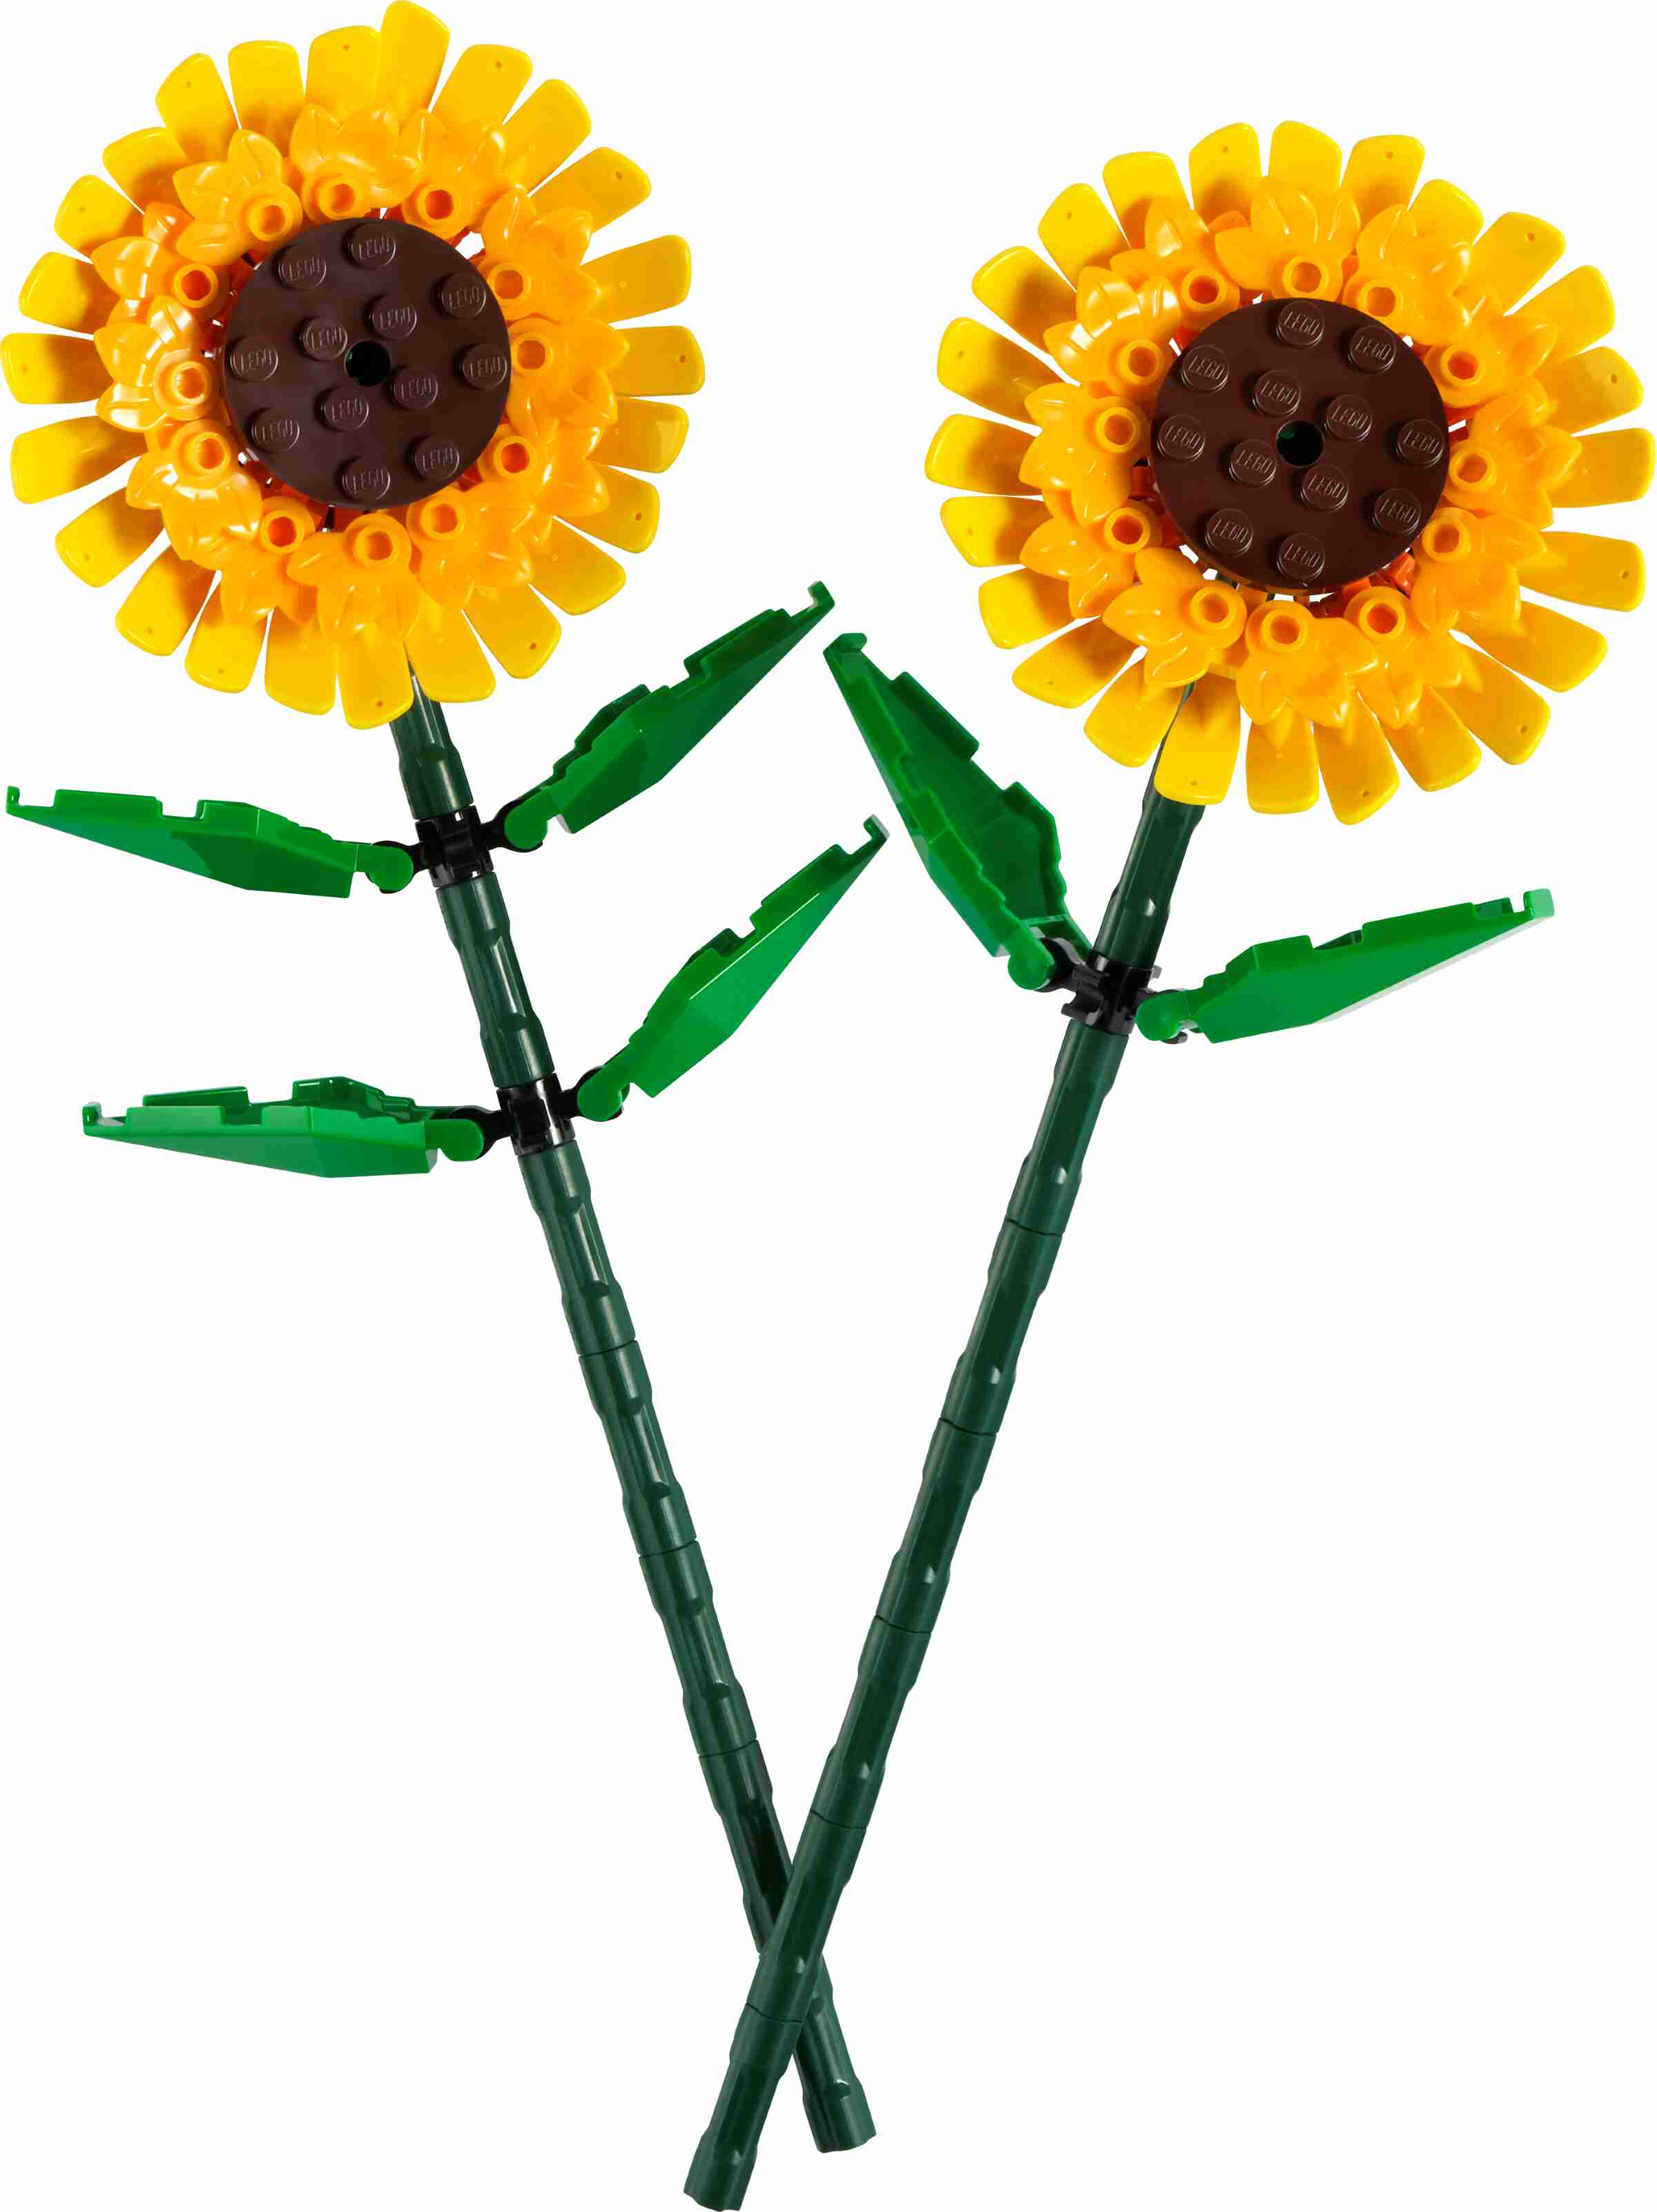 LEGO 40524 Iconic Sonnenblumen, 2 Sonnenblumenblüten, Stängel und Blätter